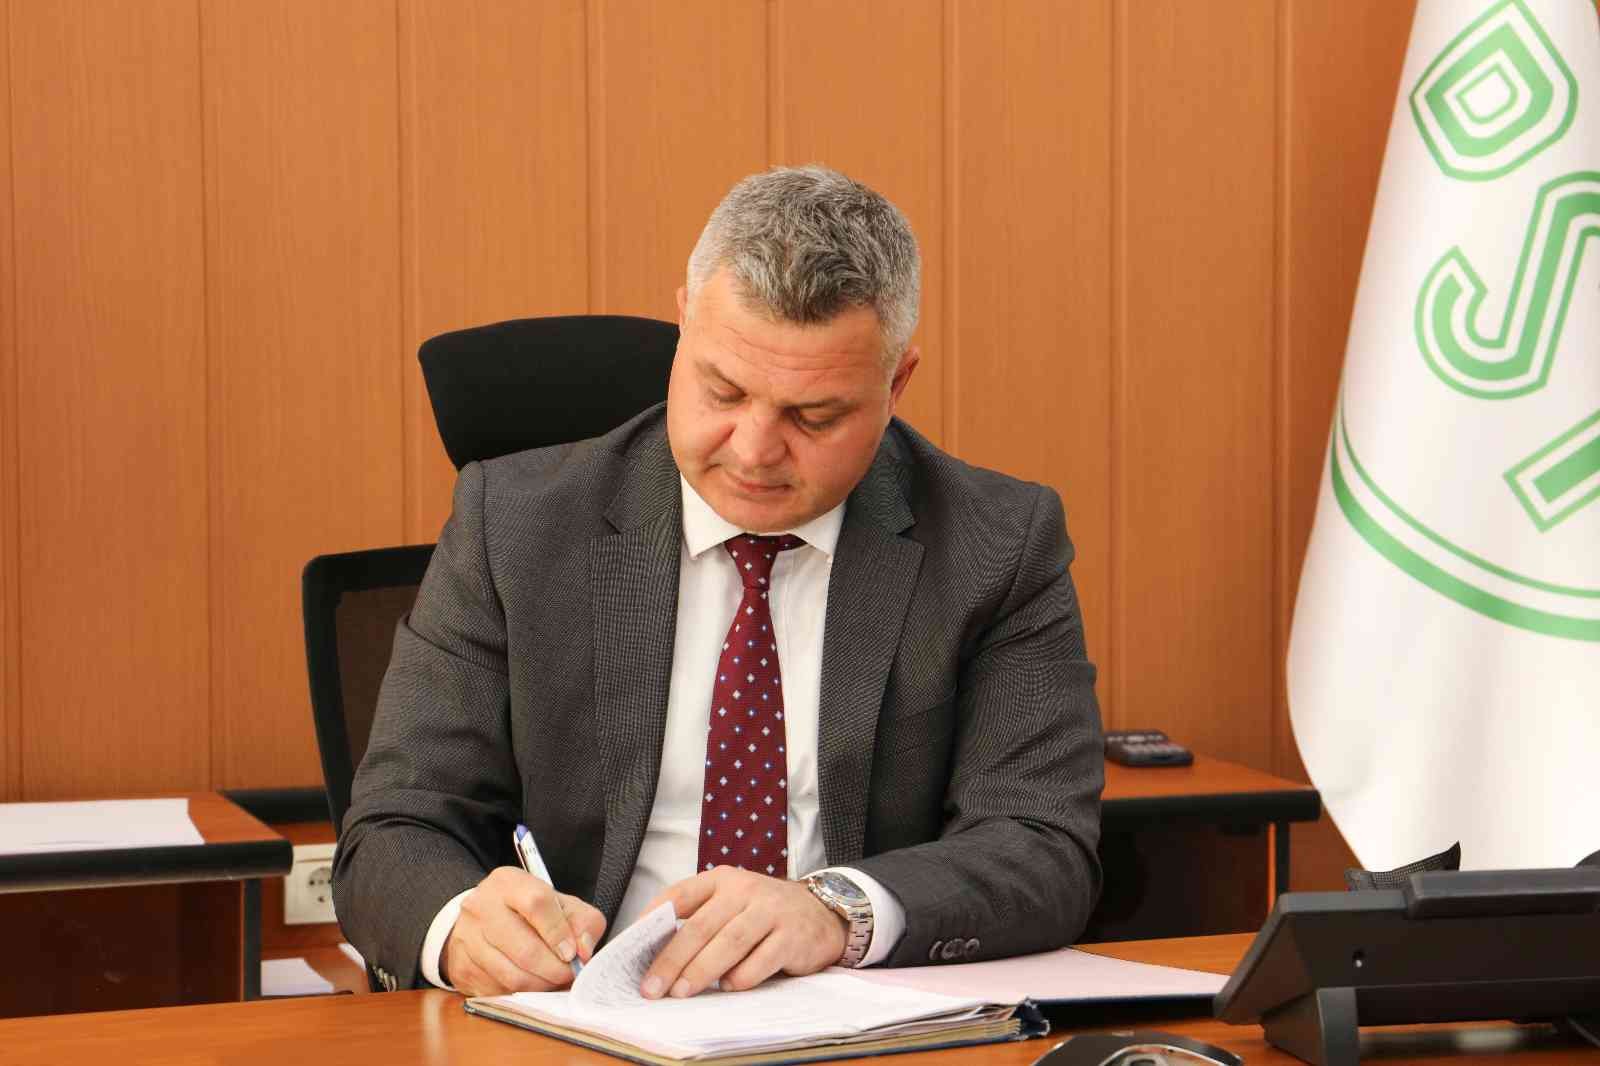 Bölge Müdürü Yavuz: “Ağrı Tutak İlçe Merkezi 1. kısım sözleşmesini imzaladı” #agri